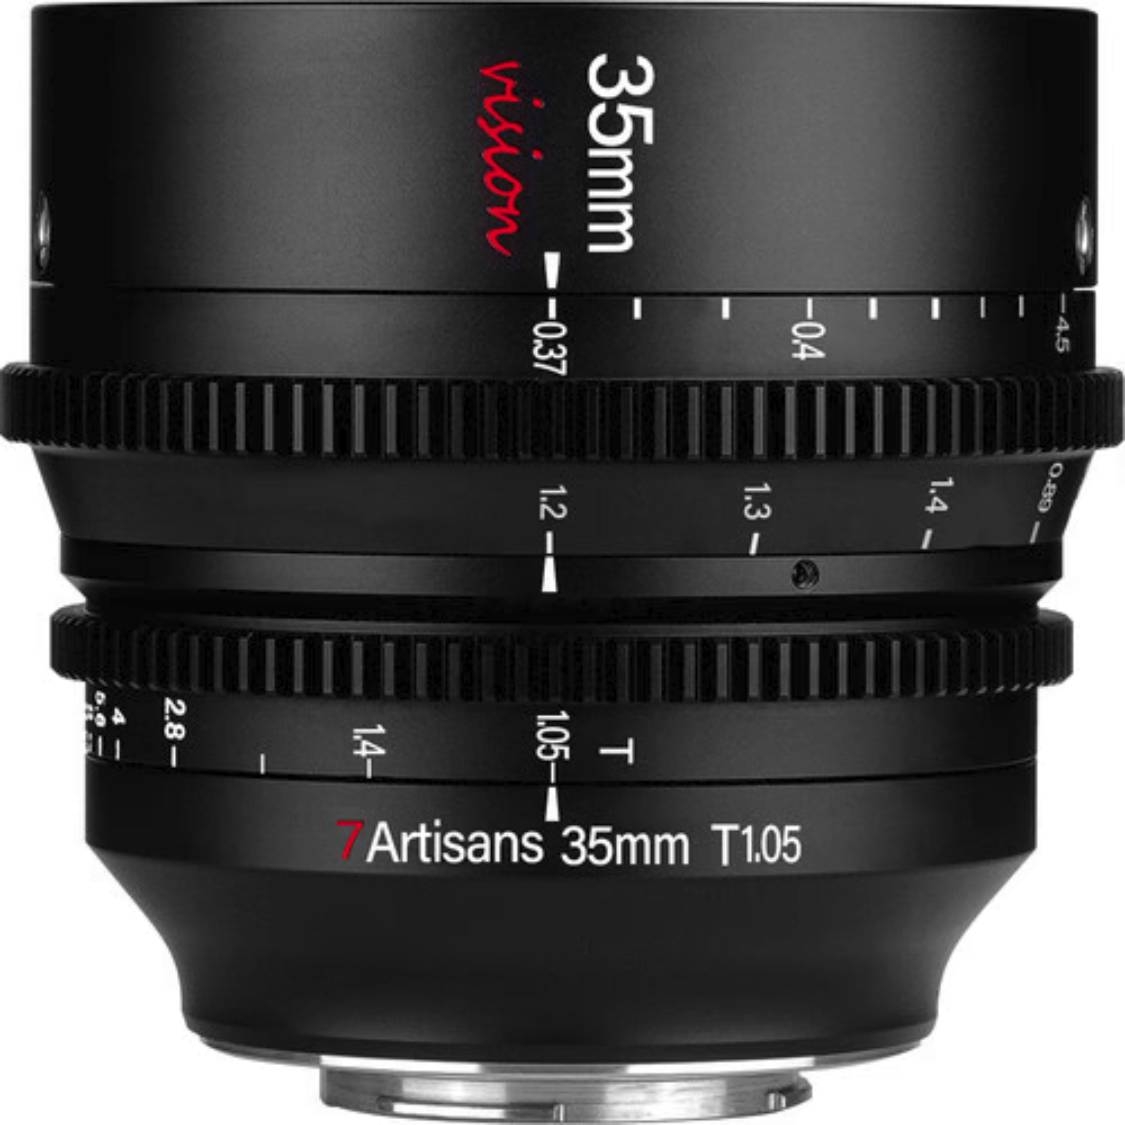 7artisans 35mm T1.05 Vision Cine Lens for Sony E Mount